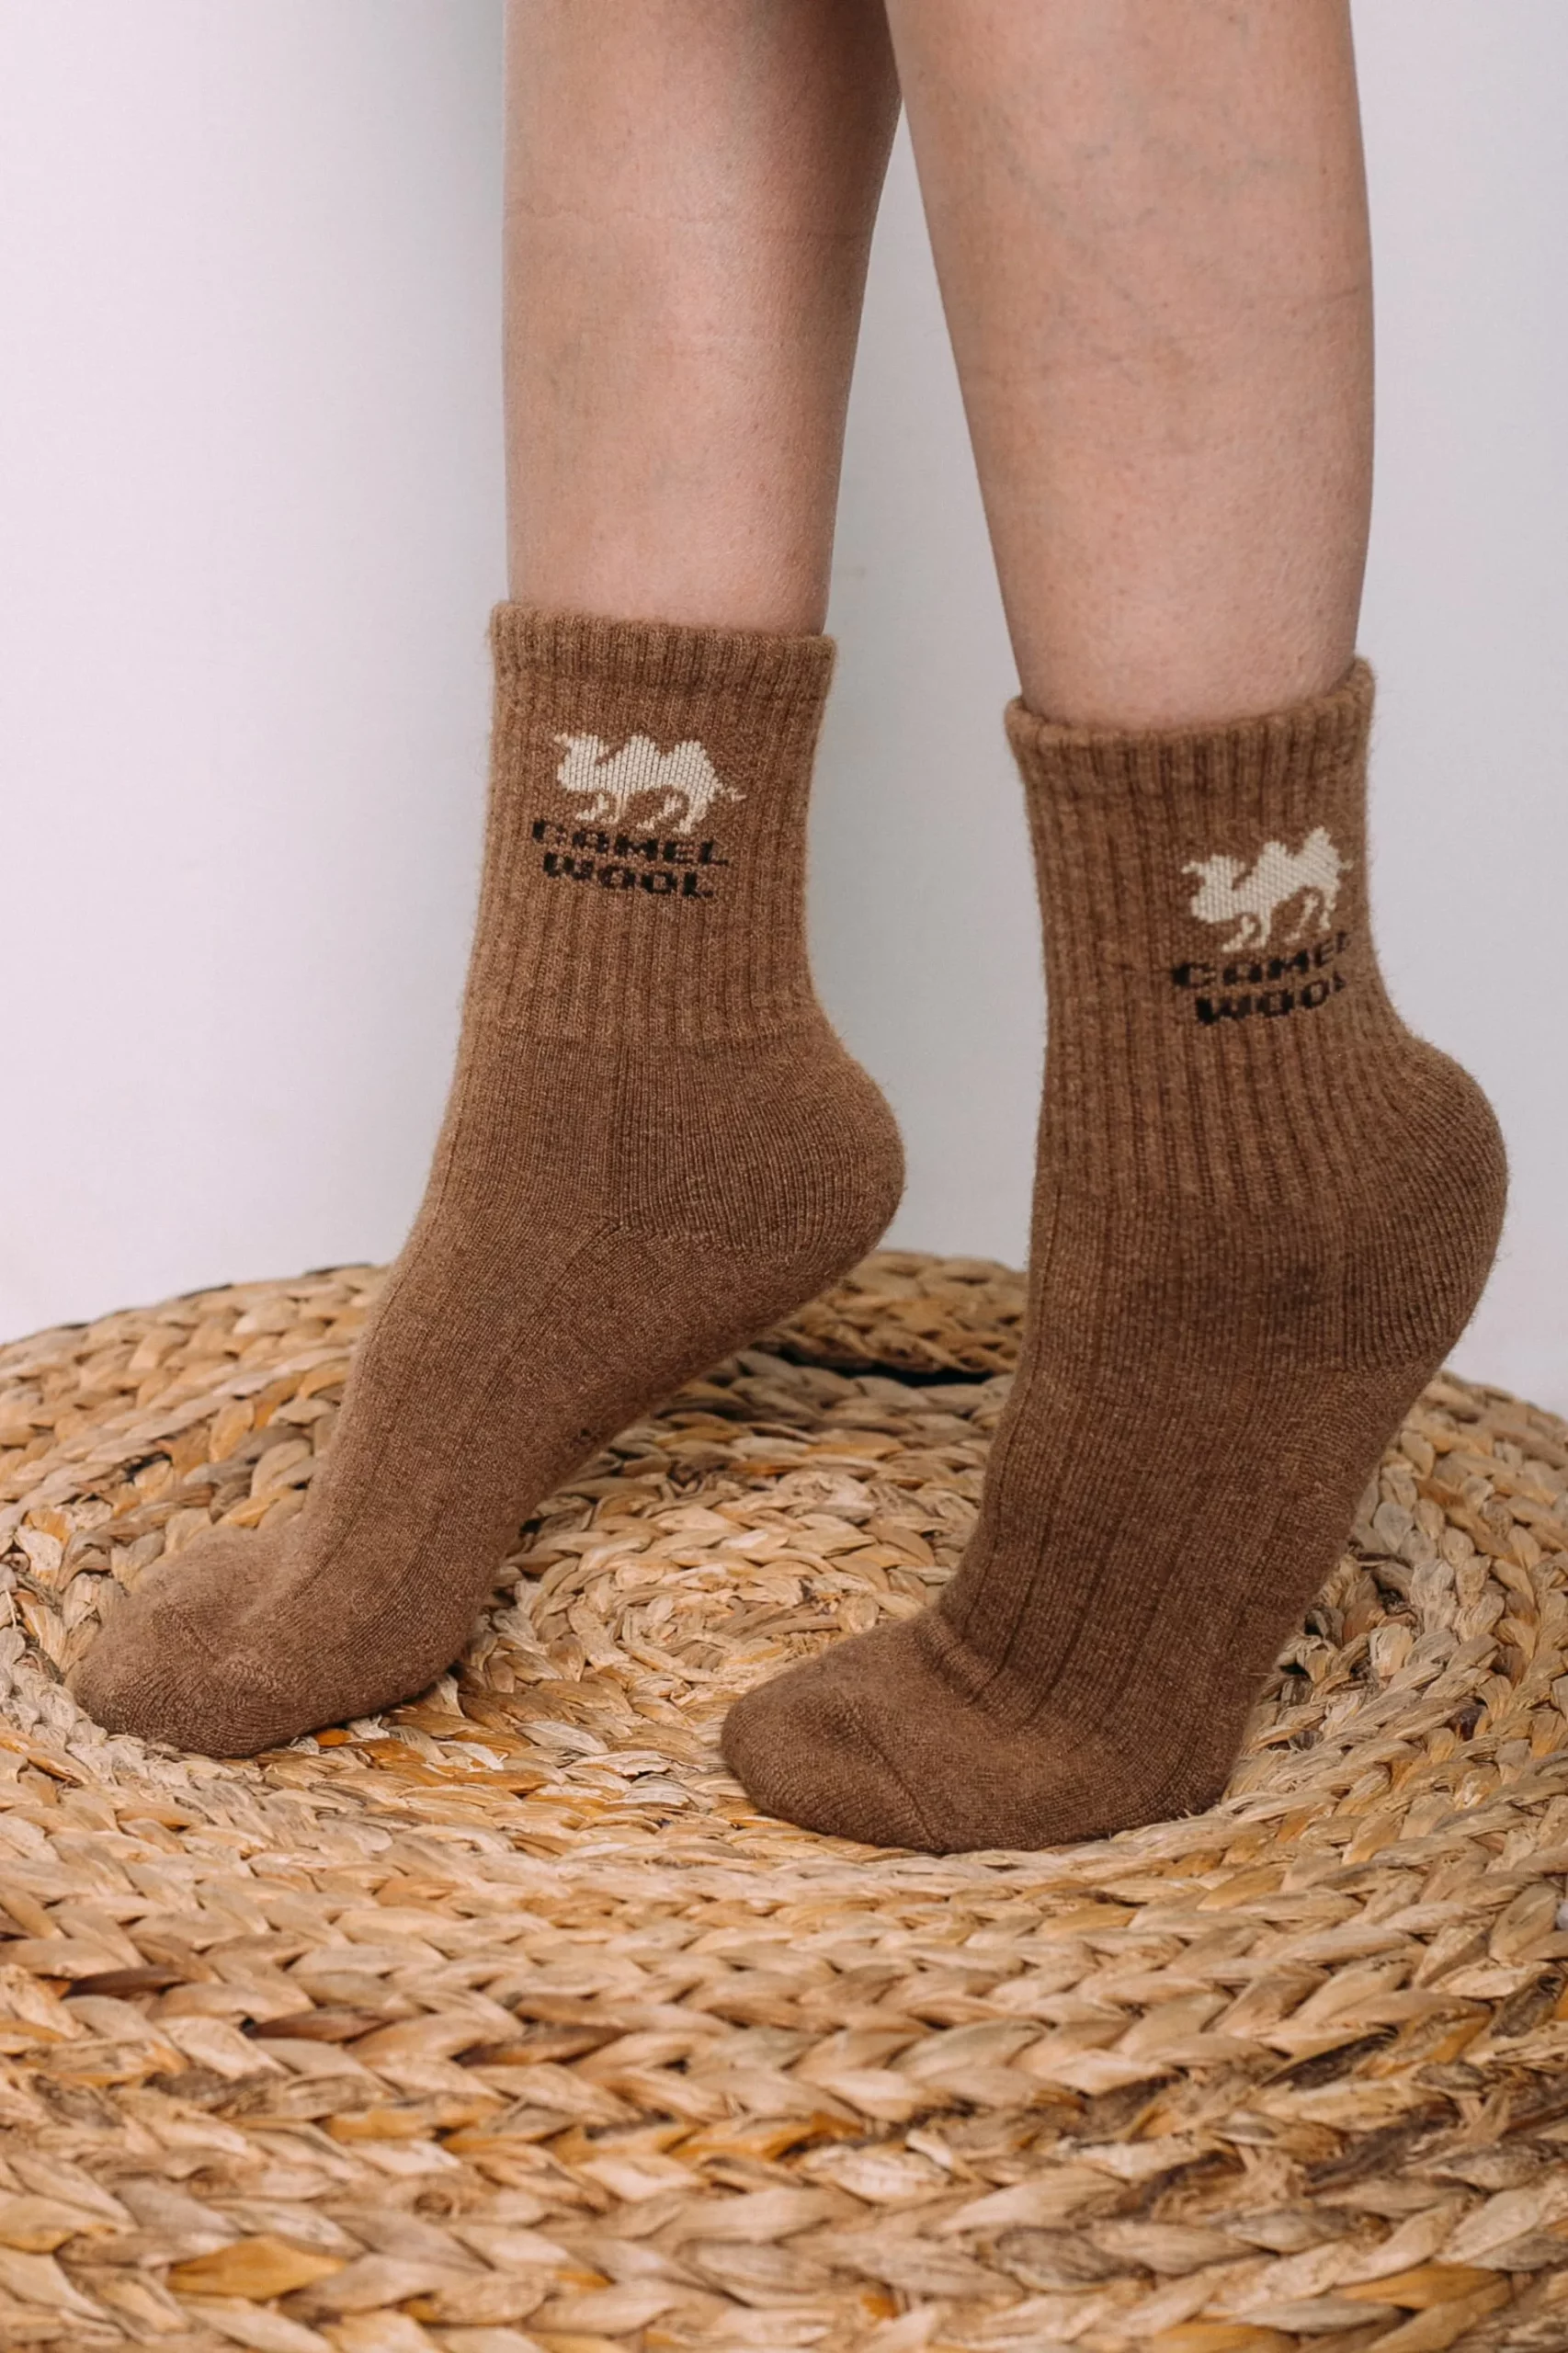 wearing camel socks